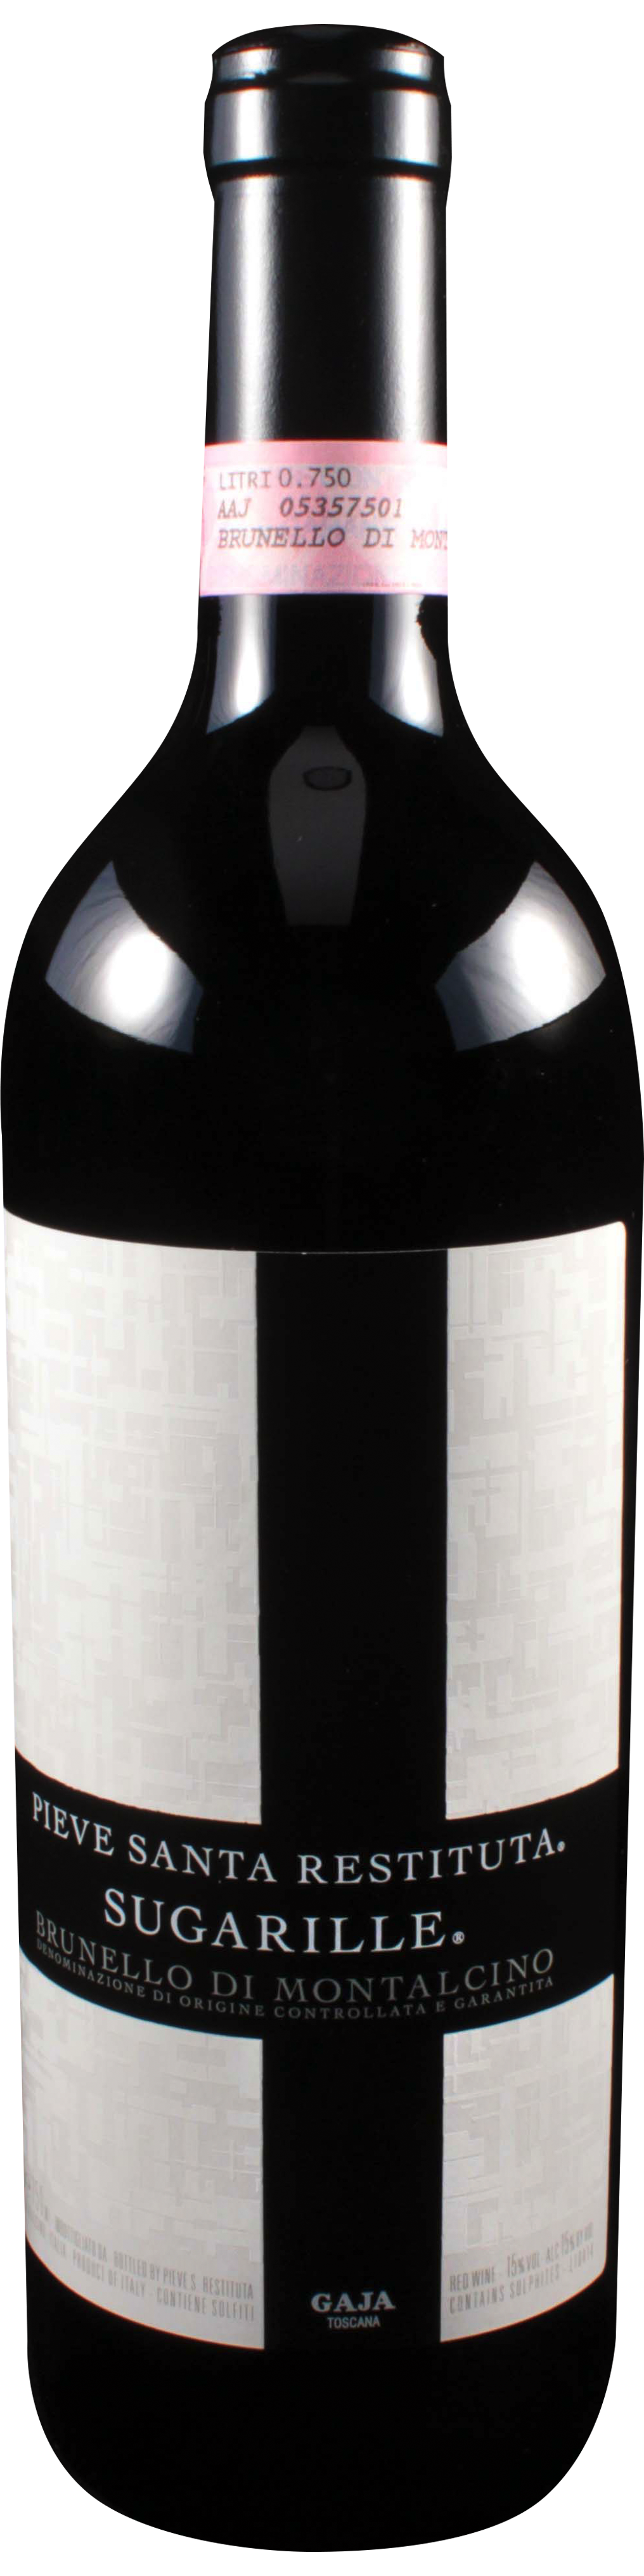 Bottle shot of 2011 Brunello di Montalcino Sugarille